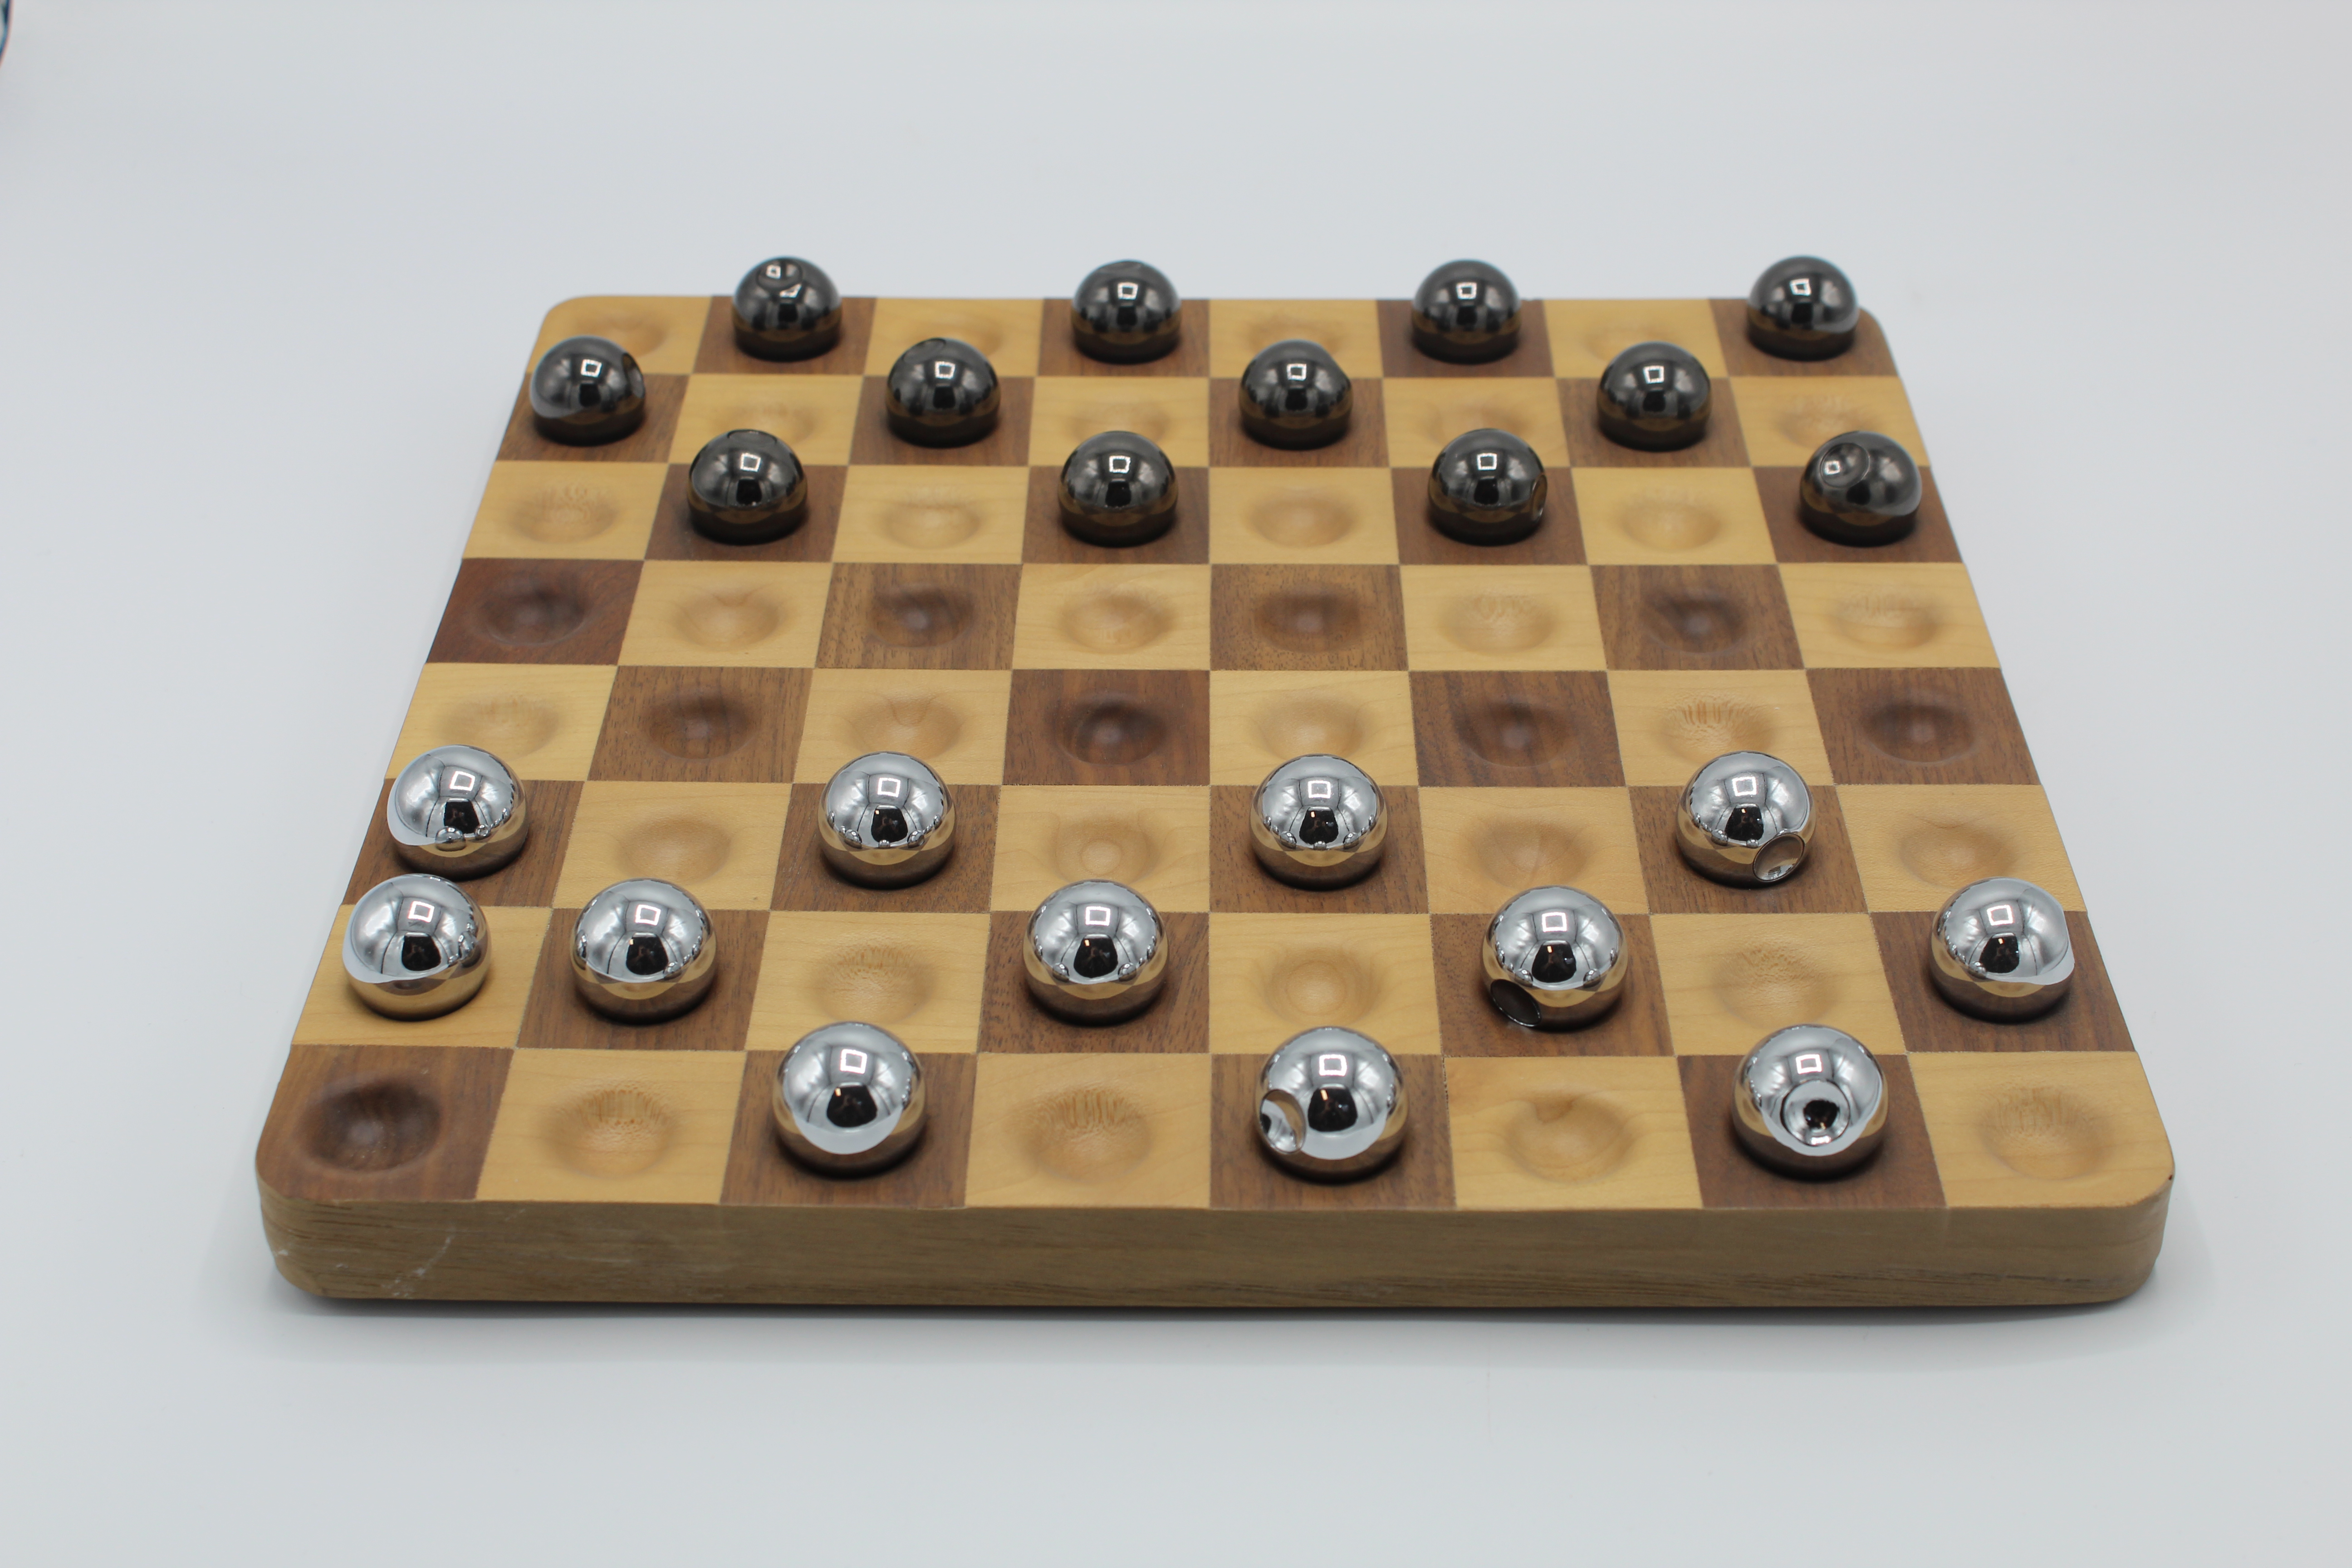 Checkers balls